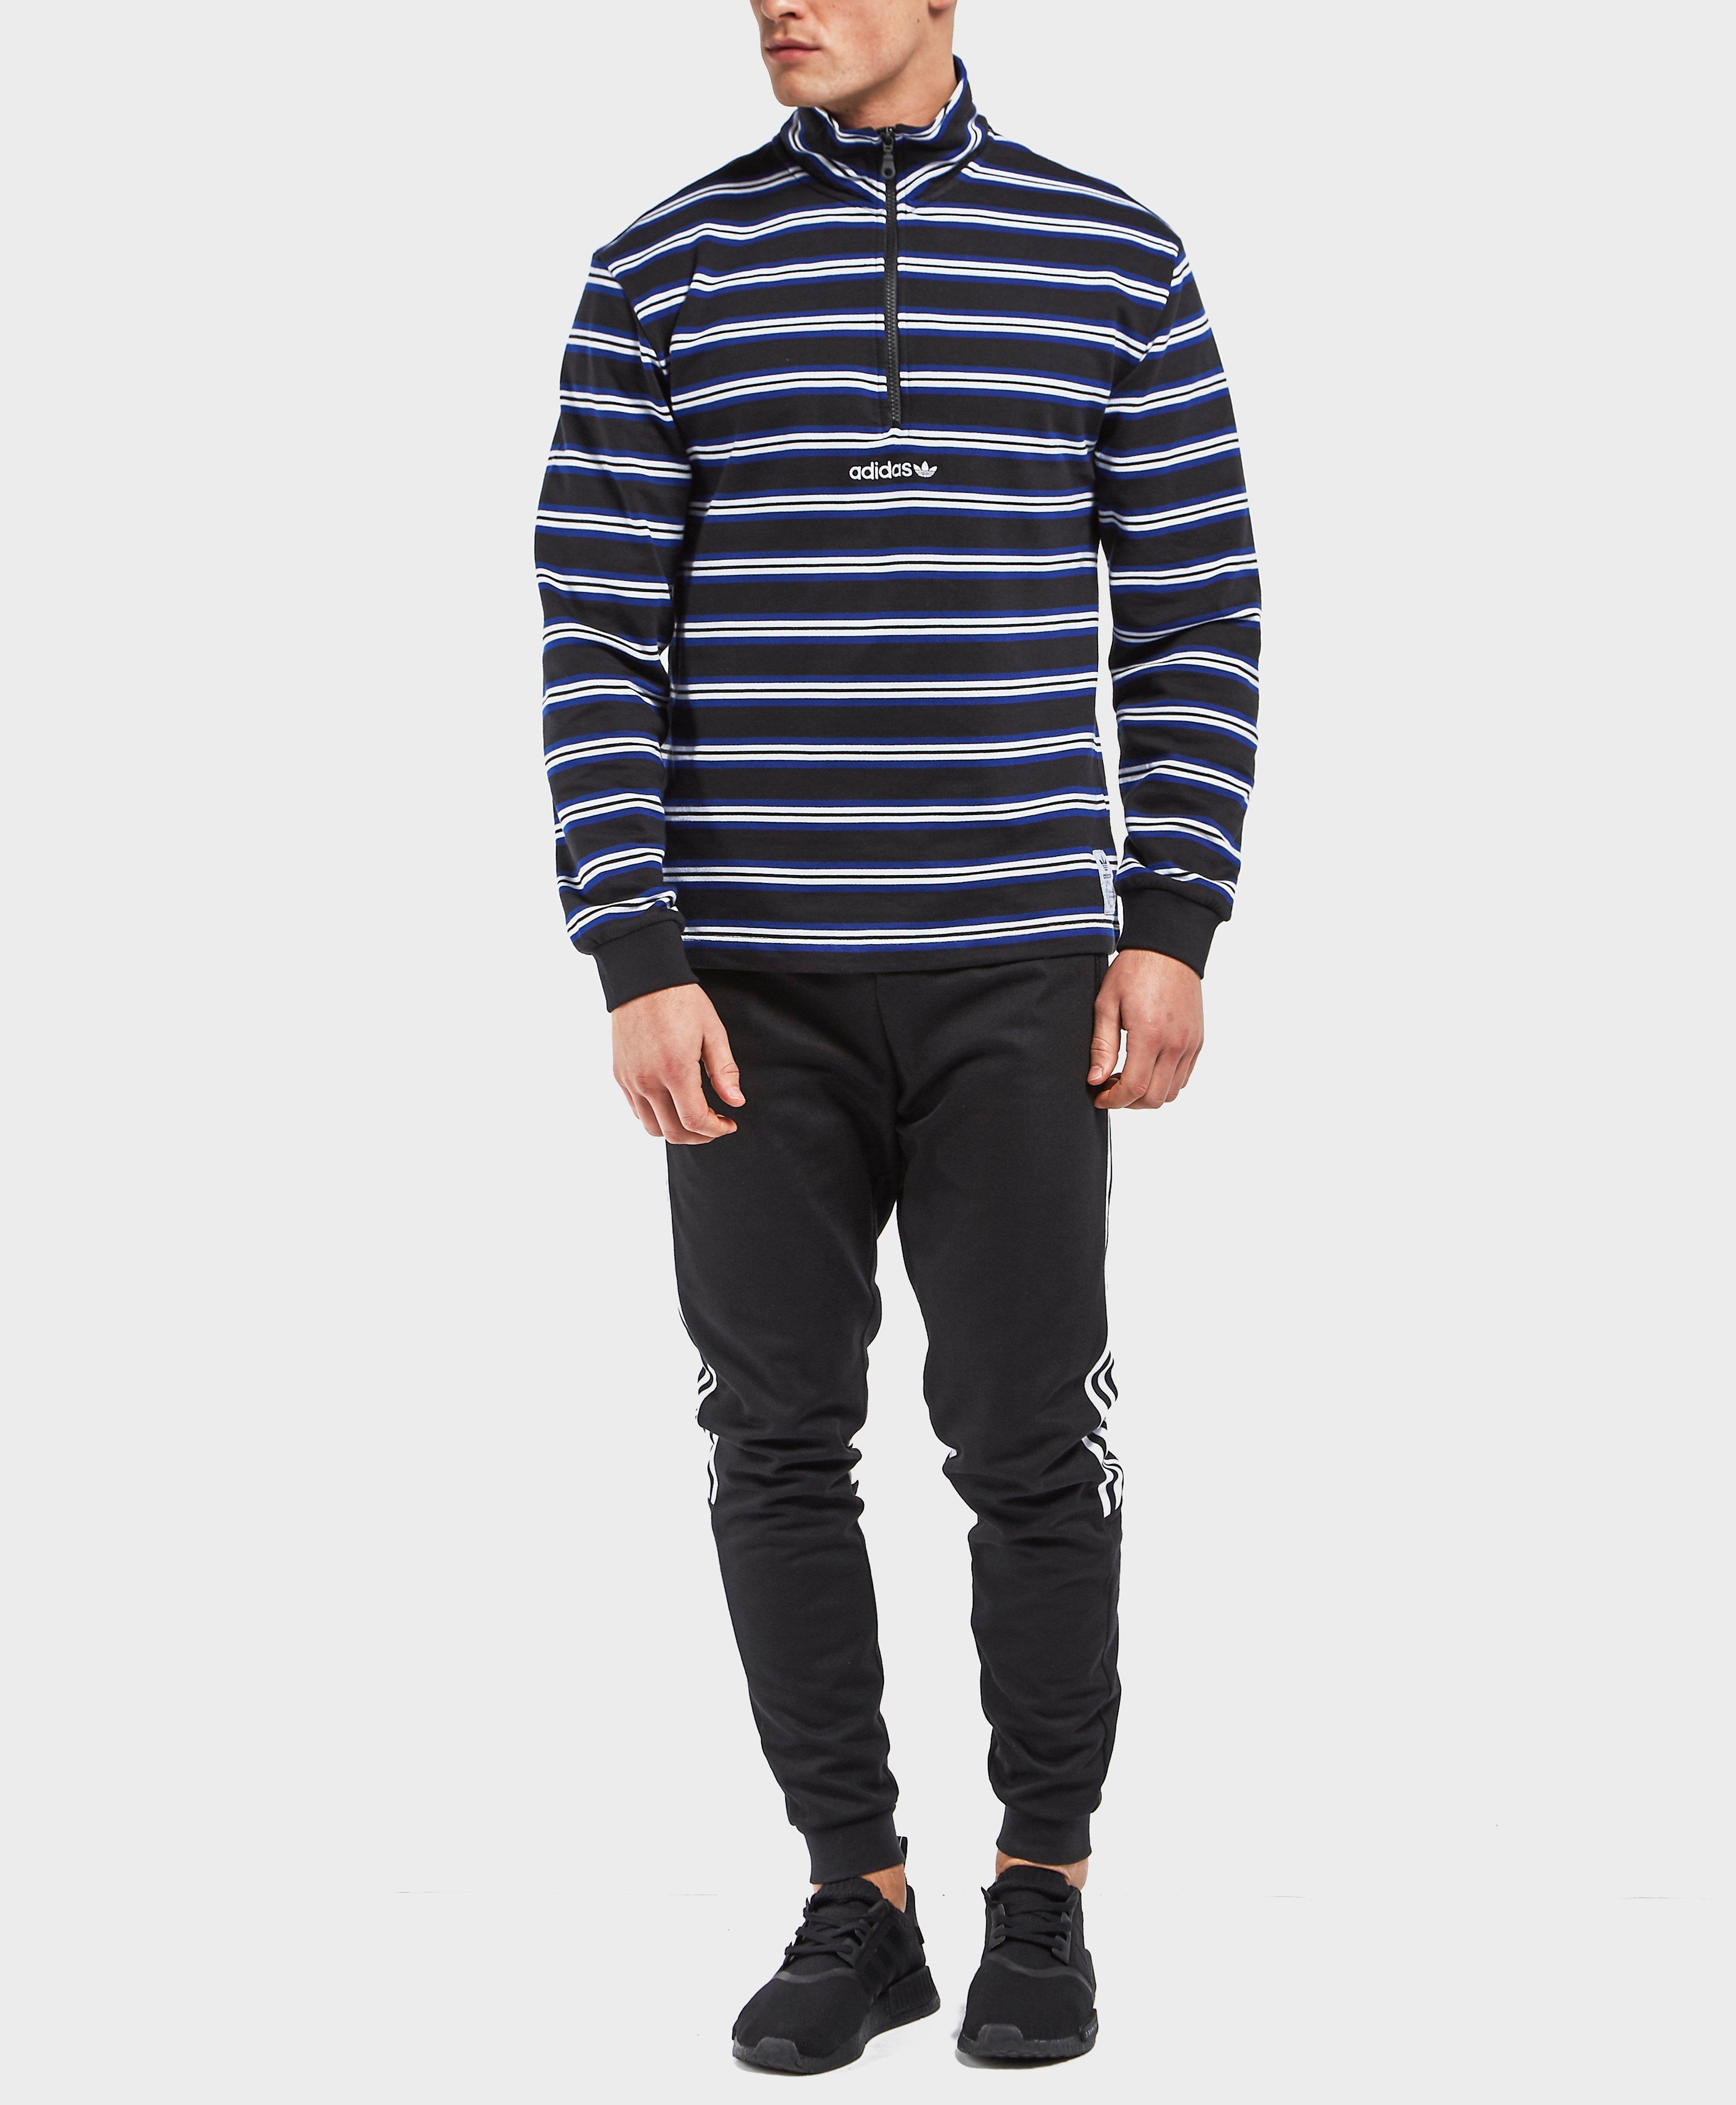 adidas Originals Cotton St. Peter Half Zip Sweatshirt in Blue for Men - Lyst